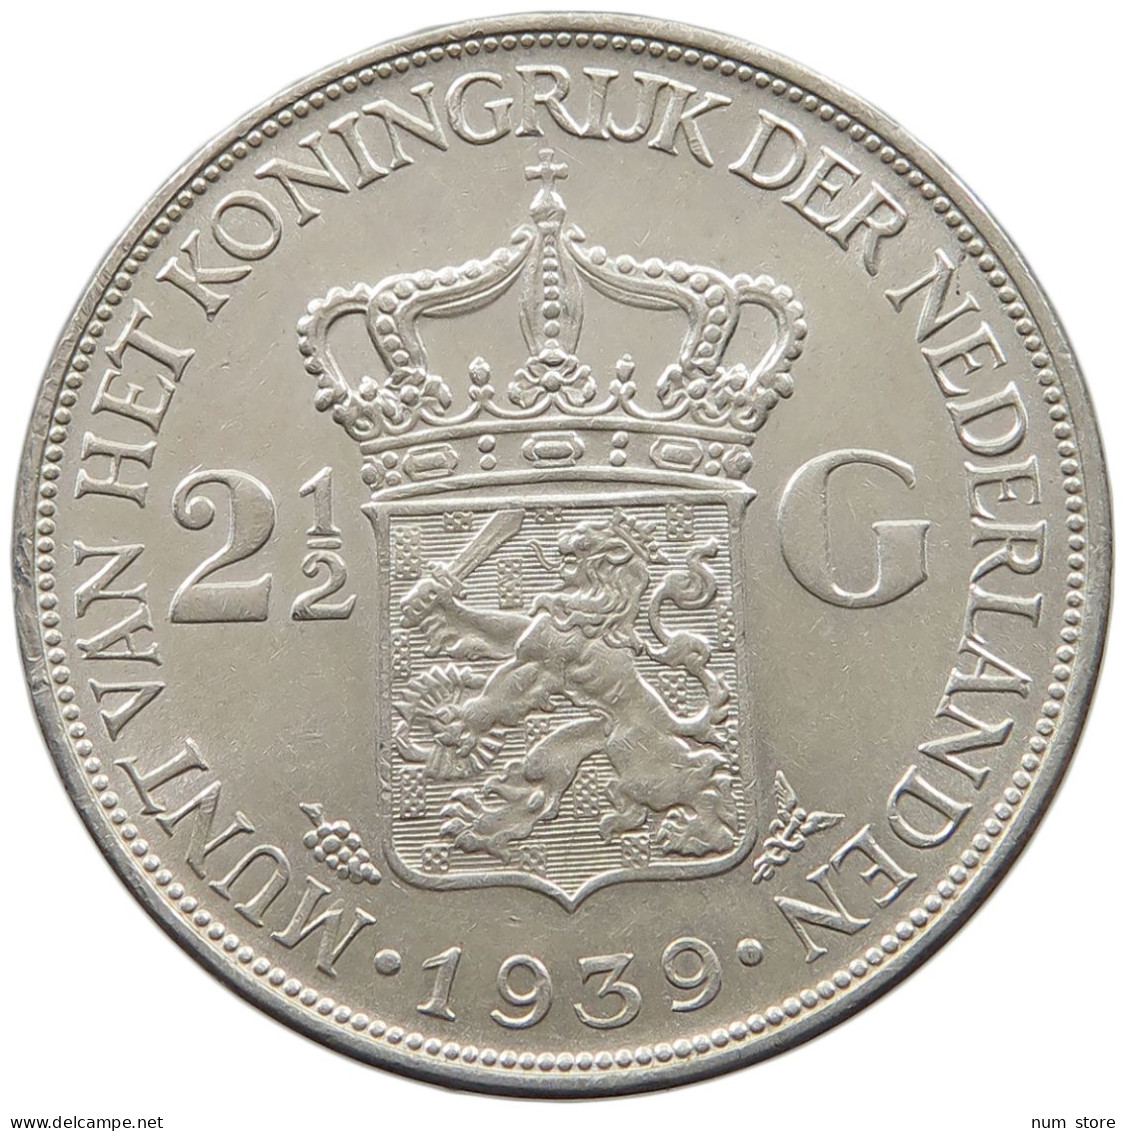 NETHERLANDS 2 1/2 GULDEN 1939 Wilhelmina 1890-1948 #t007 0393 - 2 1/2 Gulden